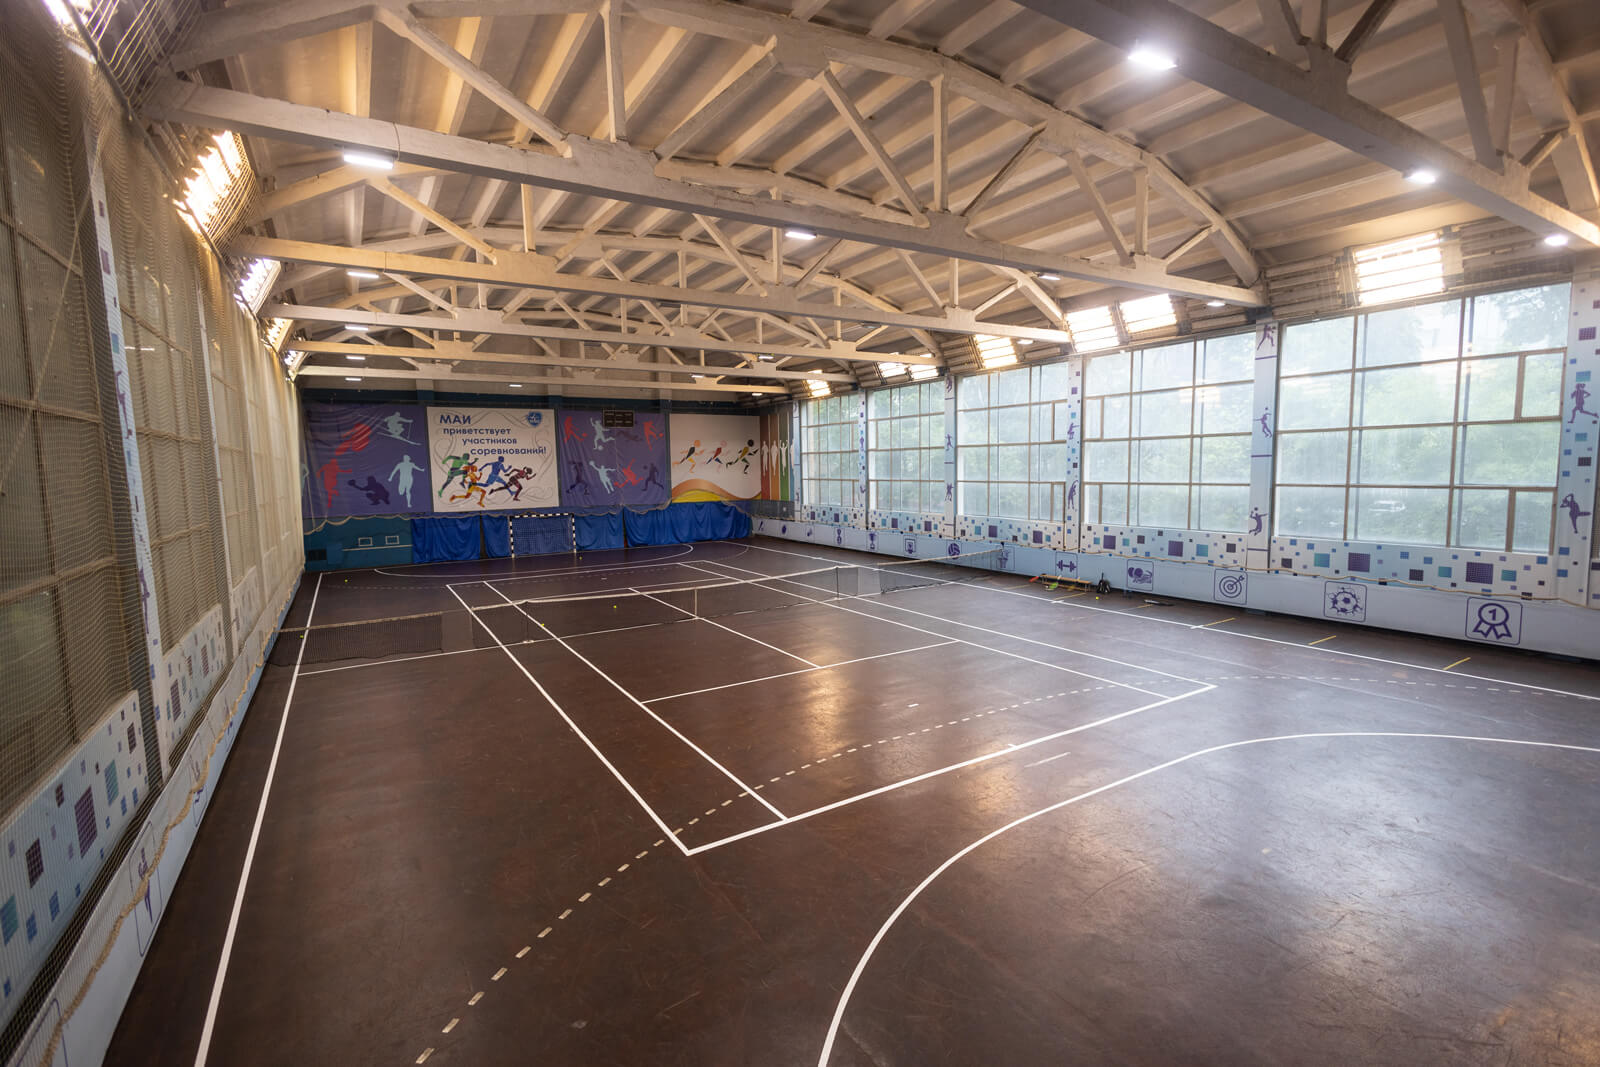 В спорткомплексе есть зал для игры в минифутбол, где проходят тренировки сборной команды МАИ по минифутболу.